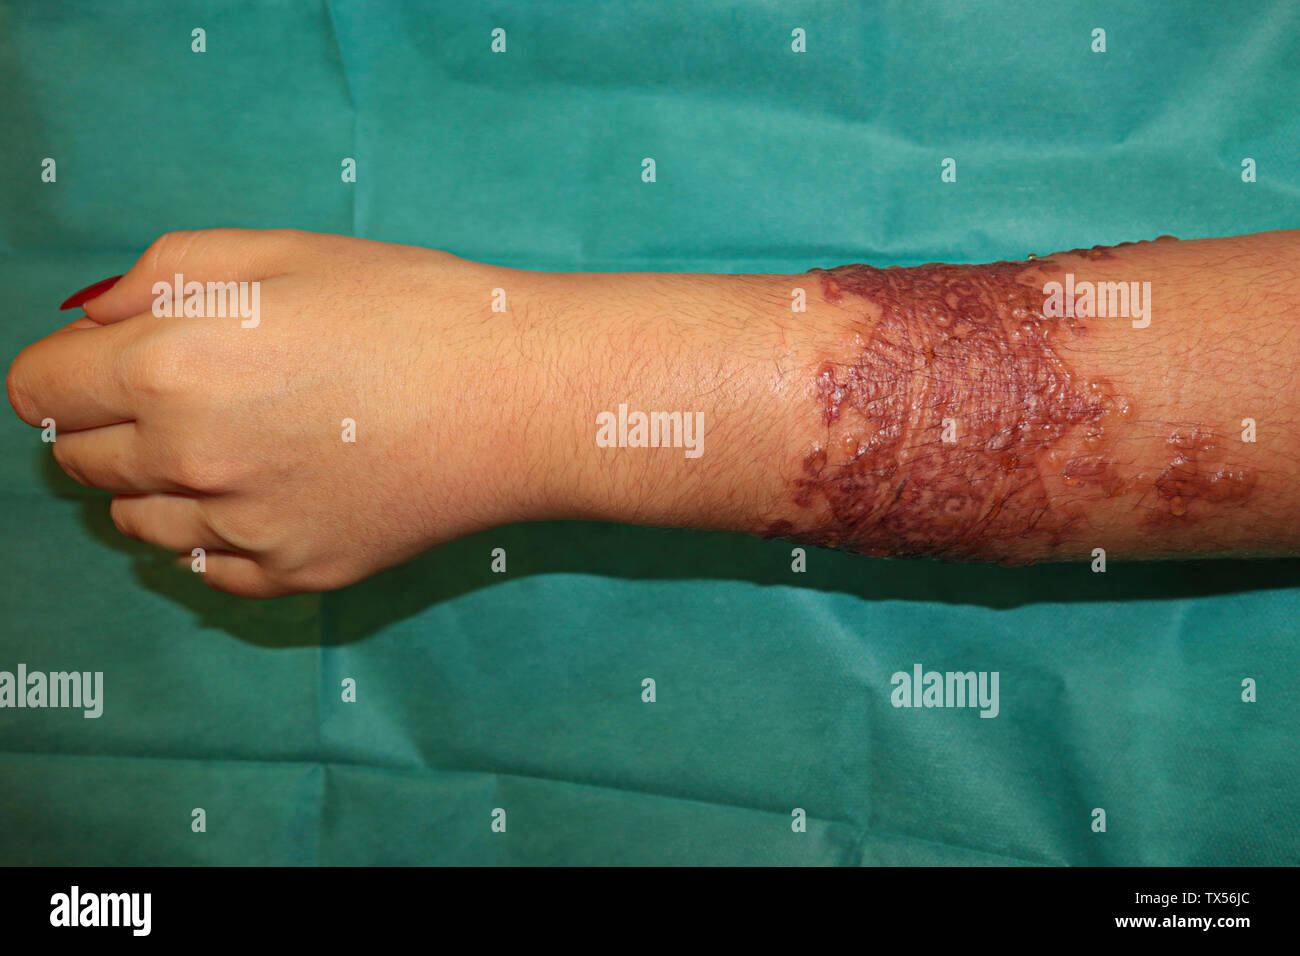 Réaction allergique ponderosa après tatouage onu au henné Foto Stock